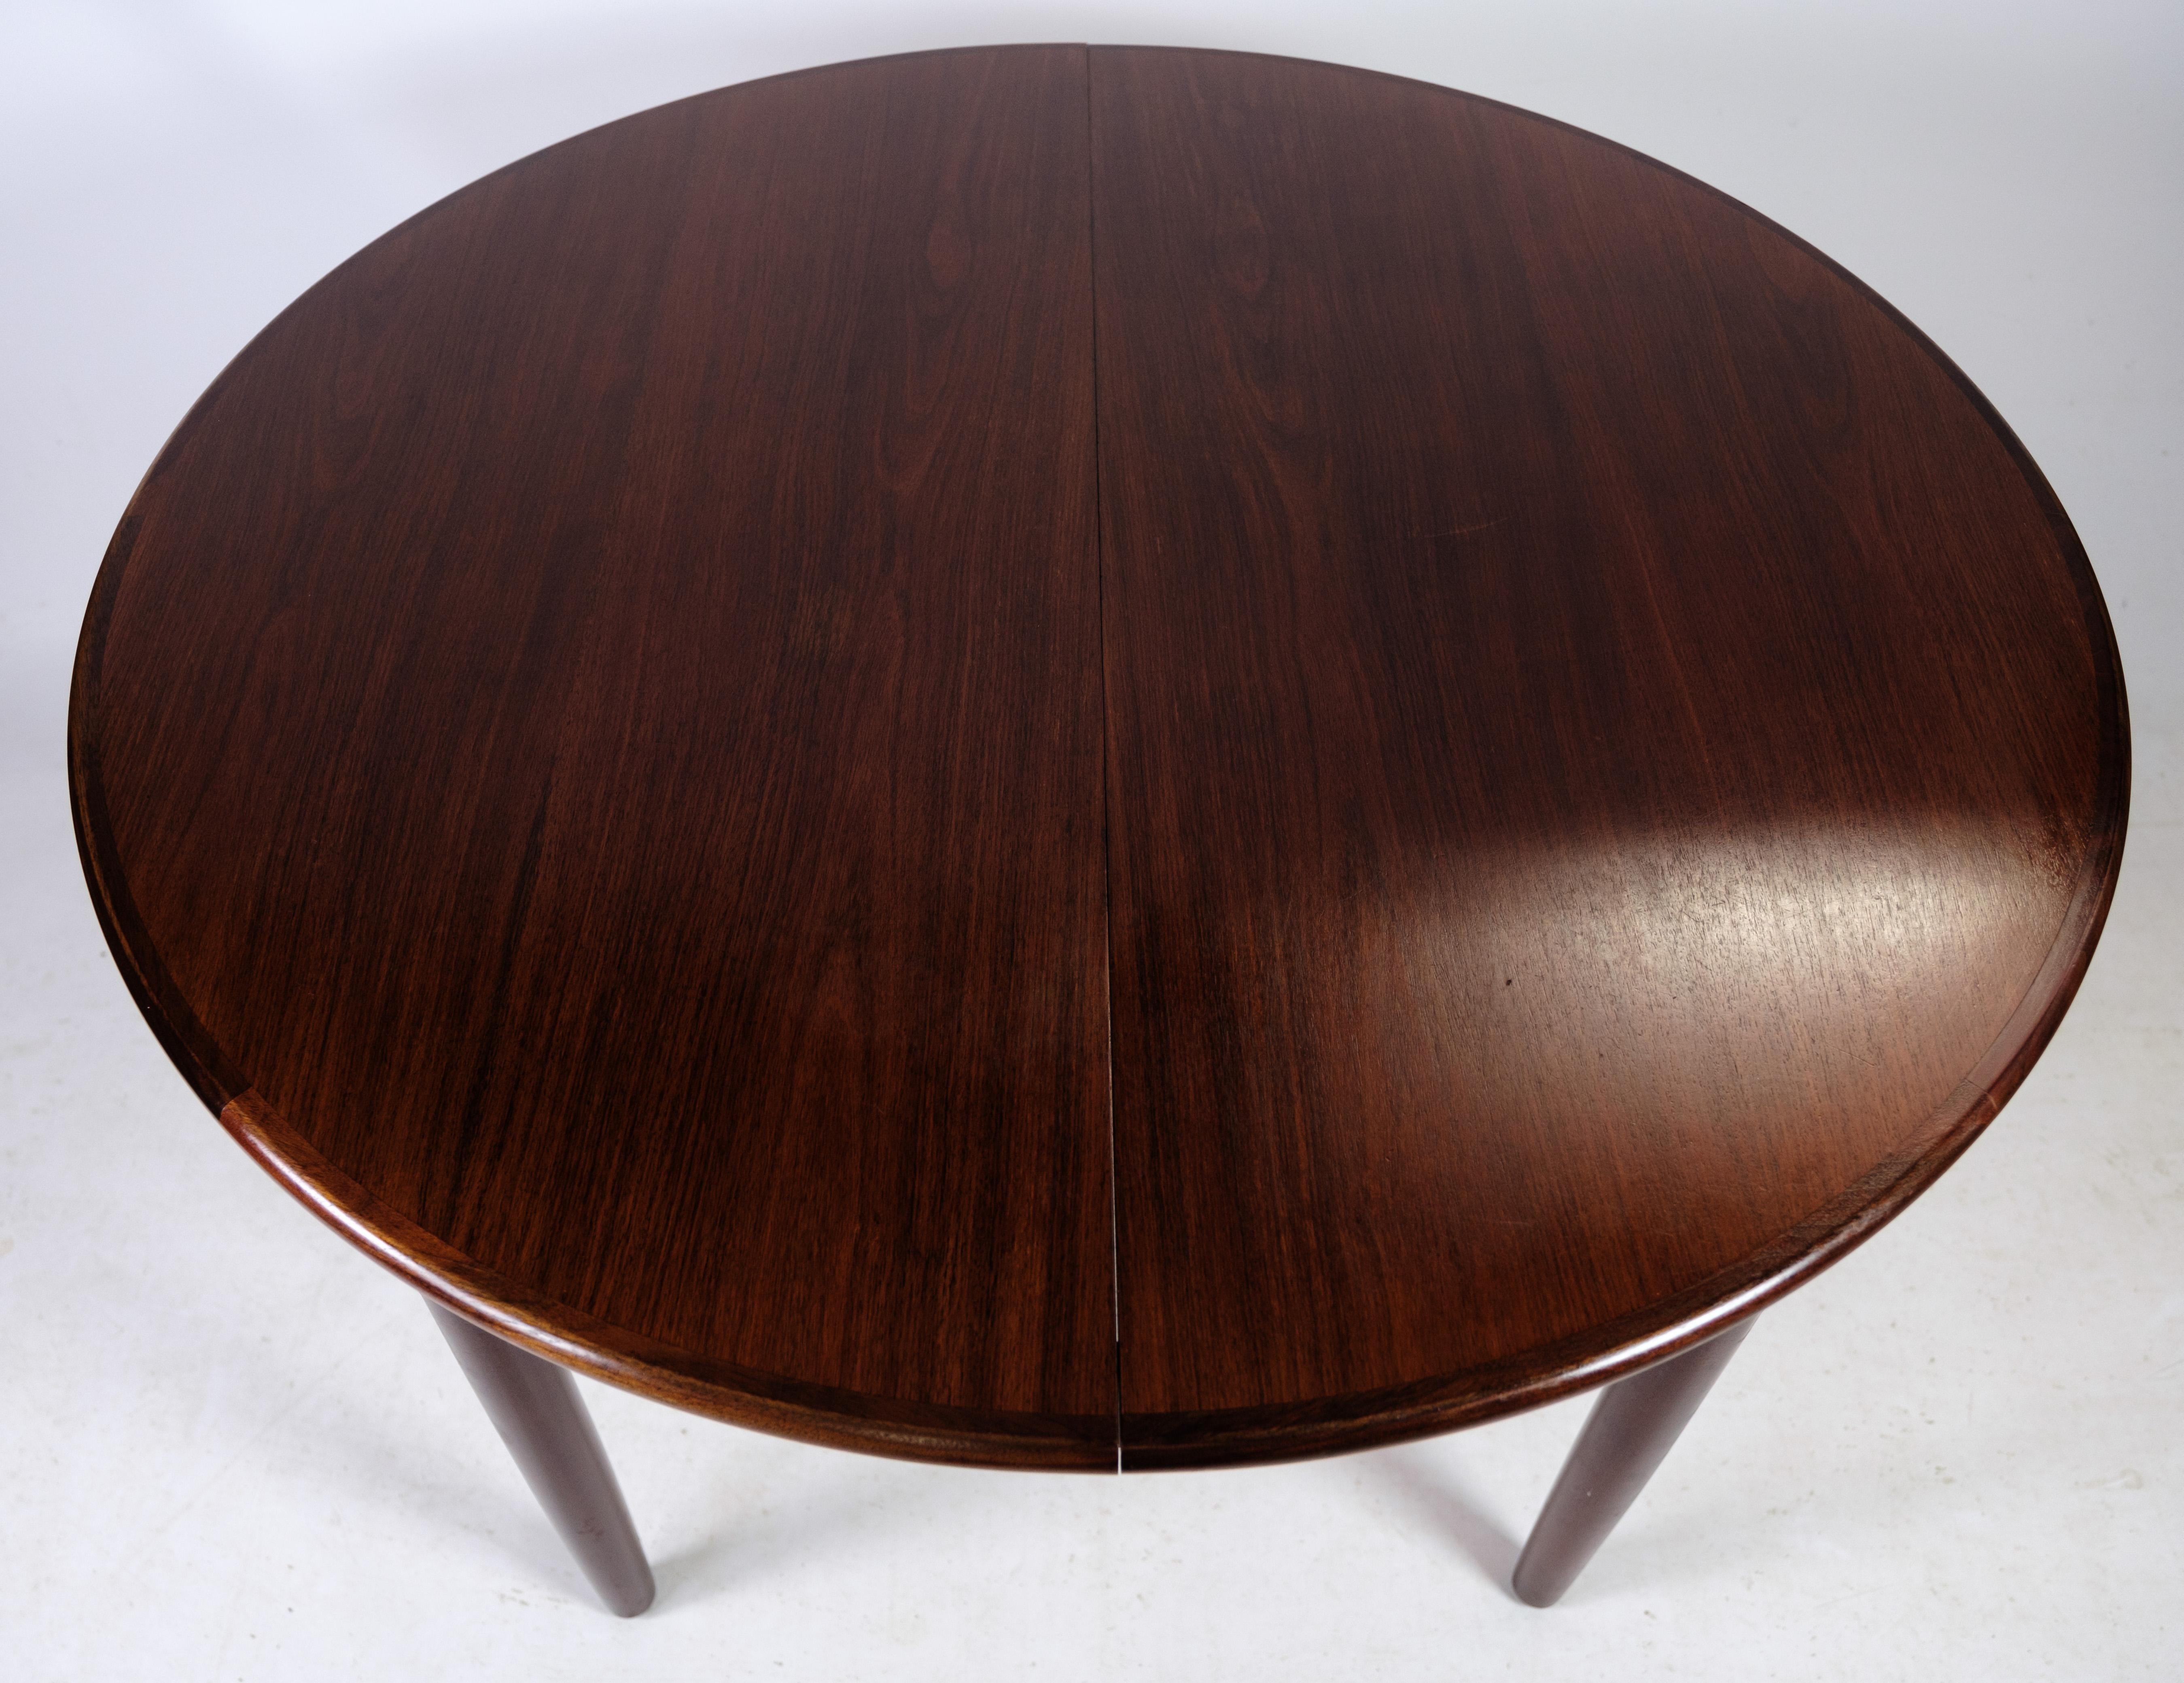 
Dieser aus Palisanderholz gefertigte Esstisch mit den unverkennbaren Merkmalen des dänischen Designs stammt aus den 1960er Jahren. Mit seinen satten Farbtönen und schlanken Linien verkörpert er die Eleganz und Raffinesse, die für dänische Möbel aus